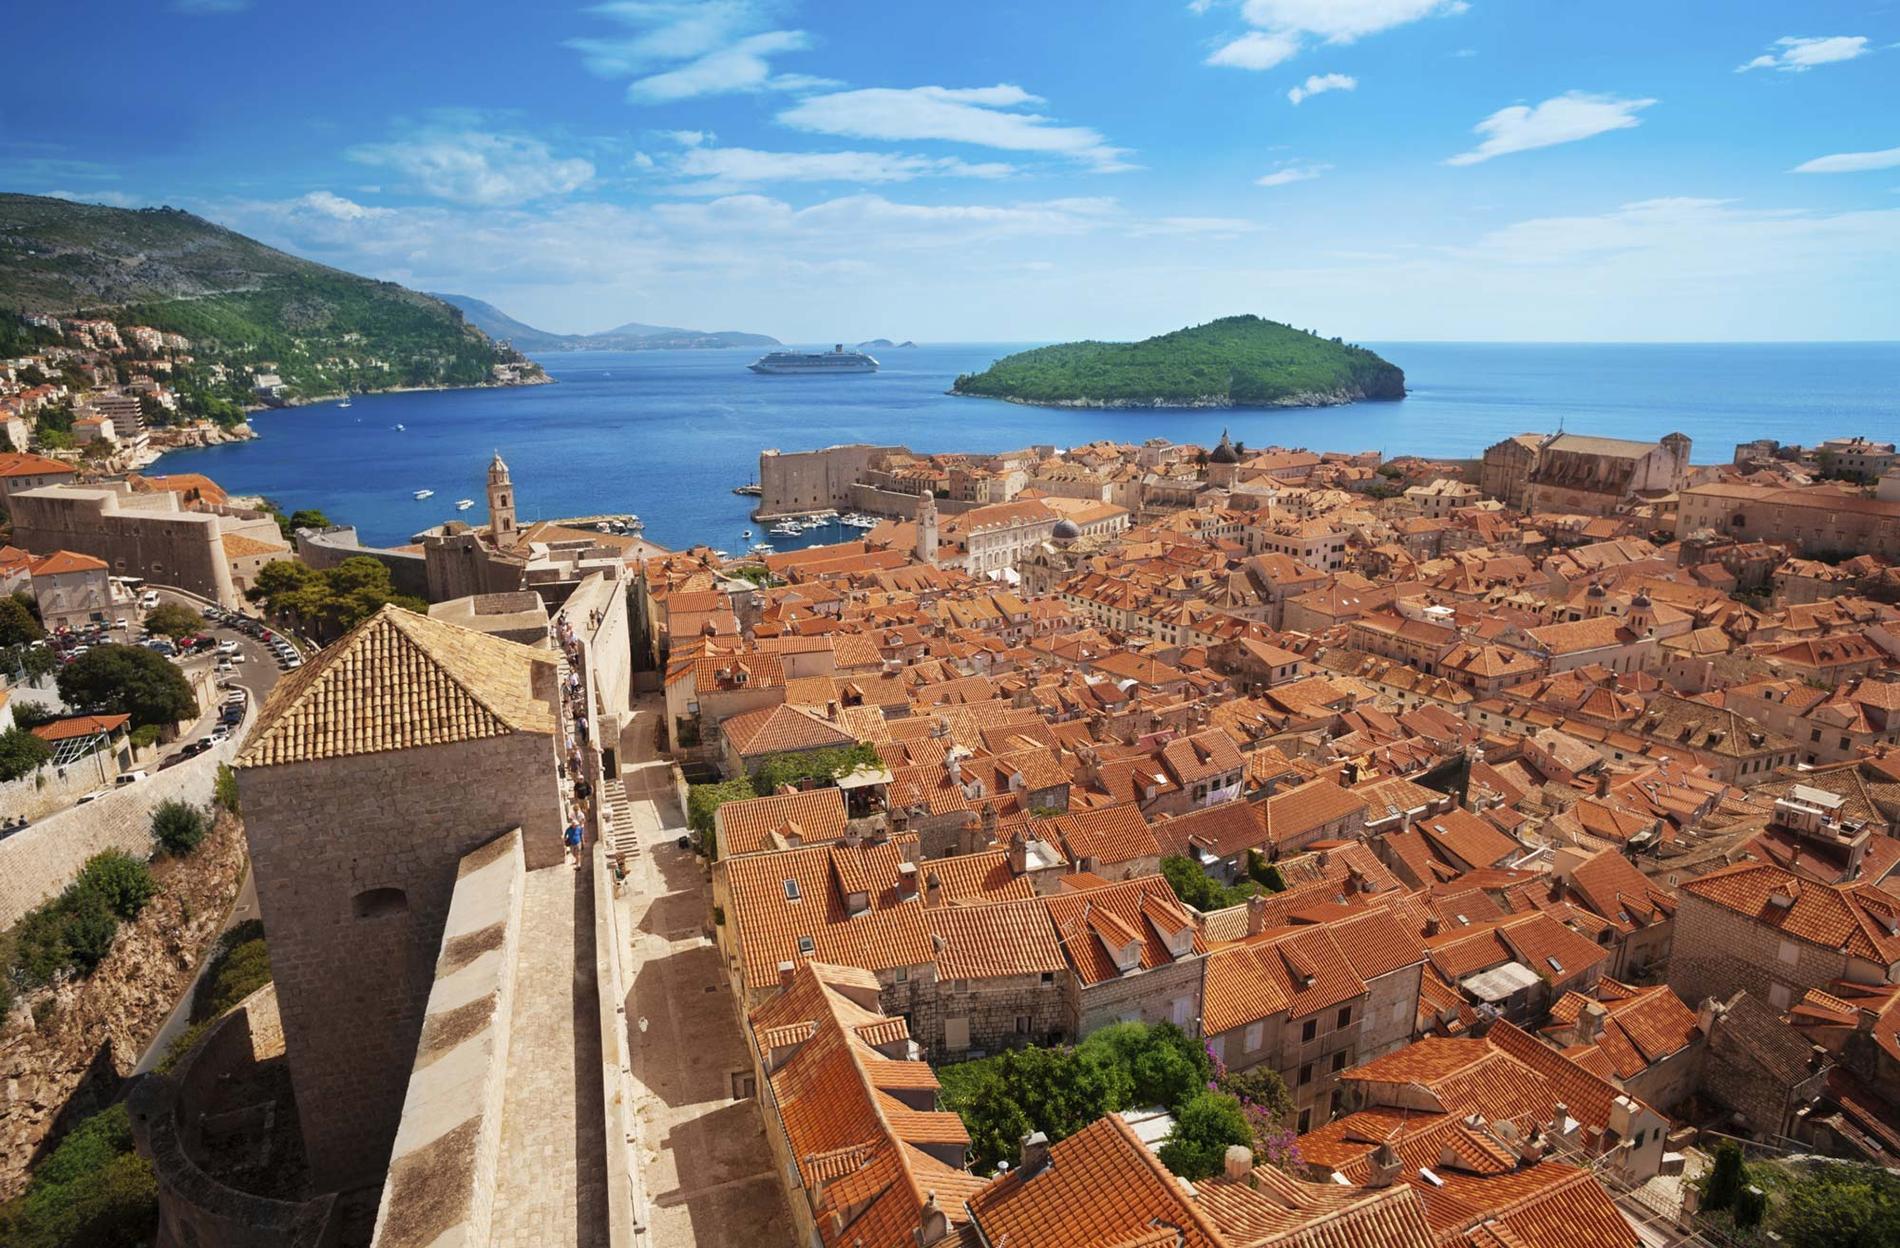 Kings Landing eller Dubrovnik? I det här fallet är det Dubrovnik, men staden användes som inspelningsplats för Game of Thrones scener i Kings Landing.